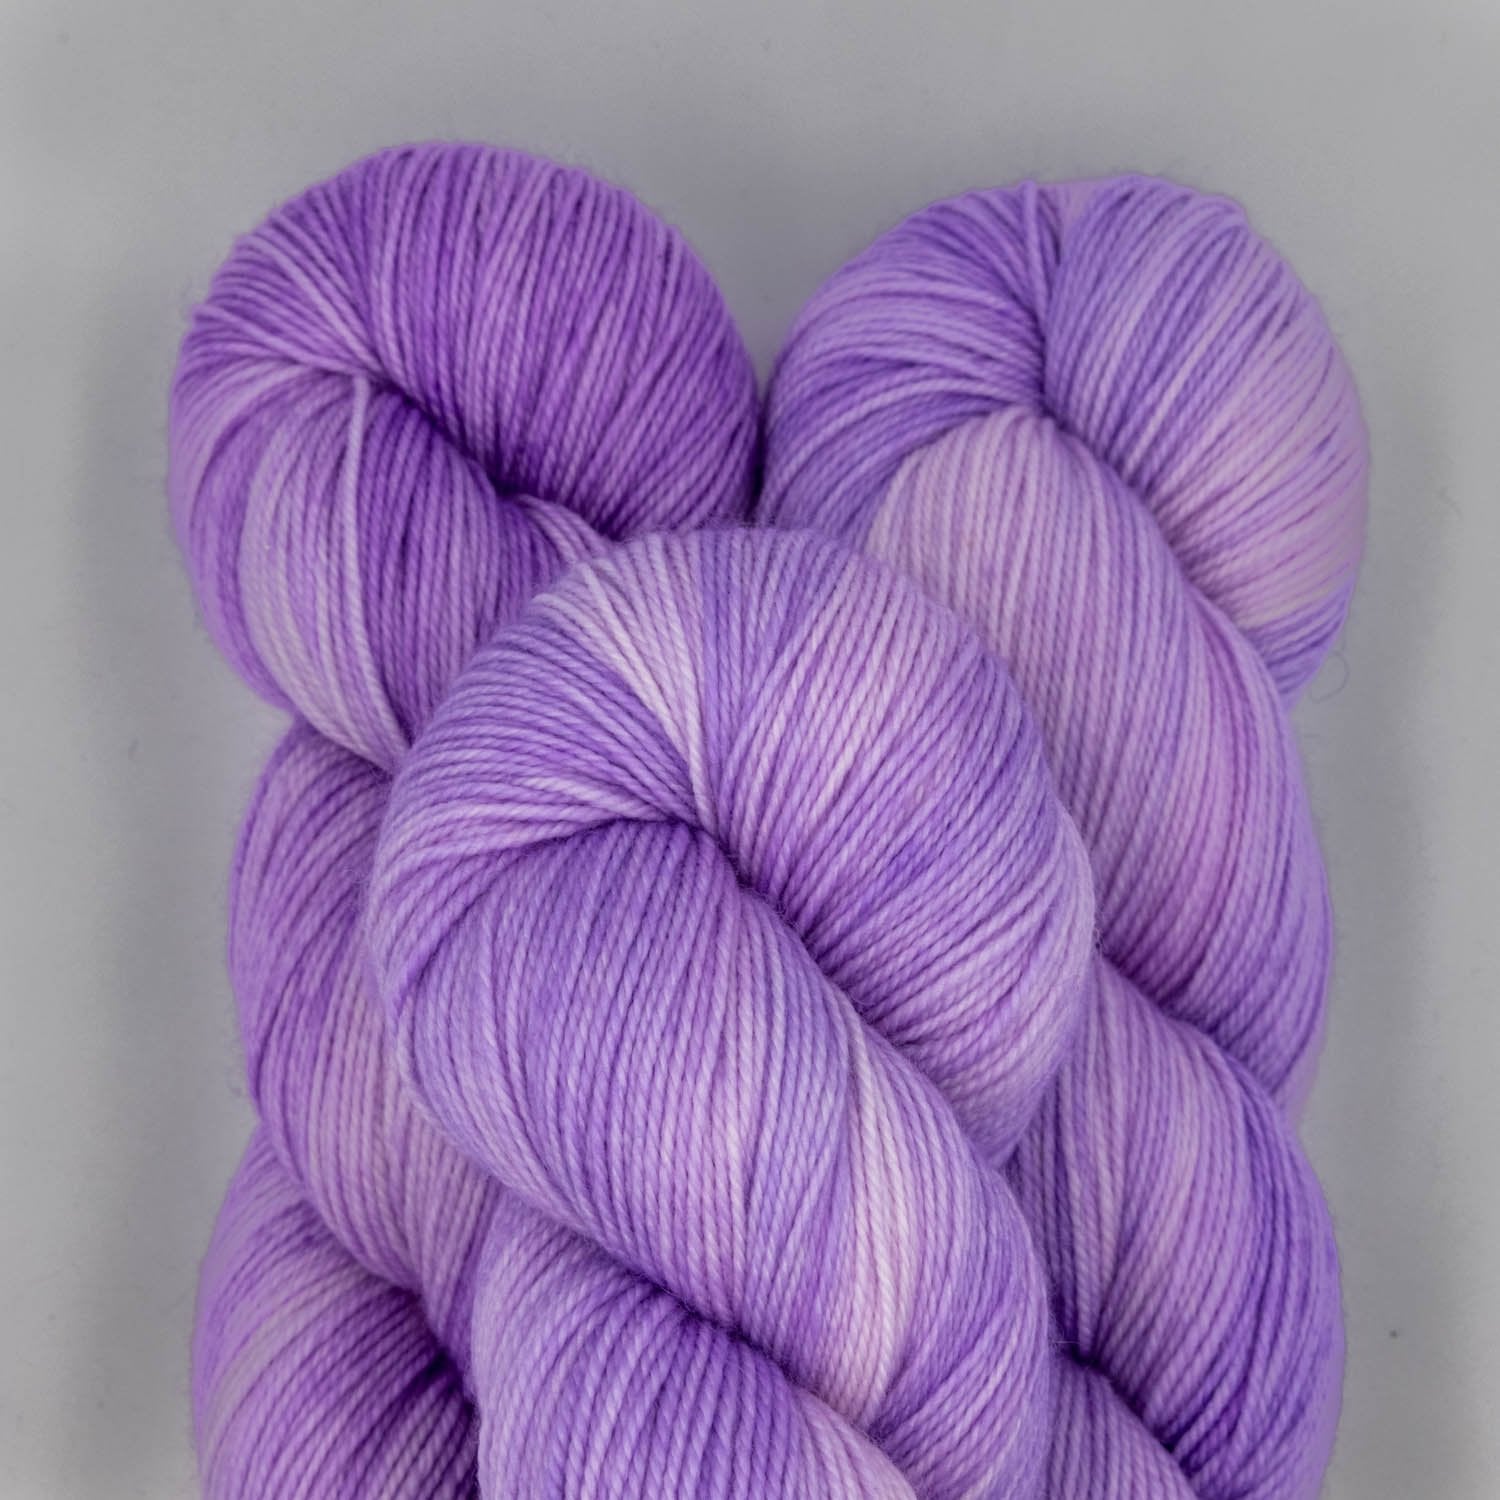 Meriwool Digital Lavender